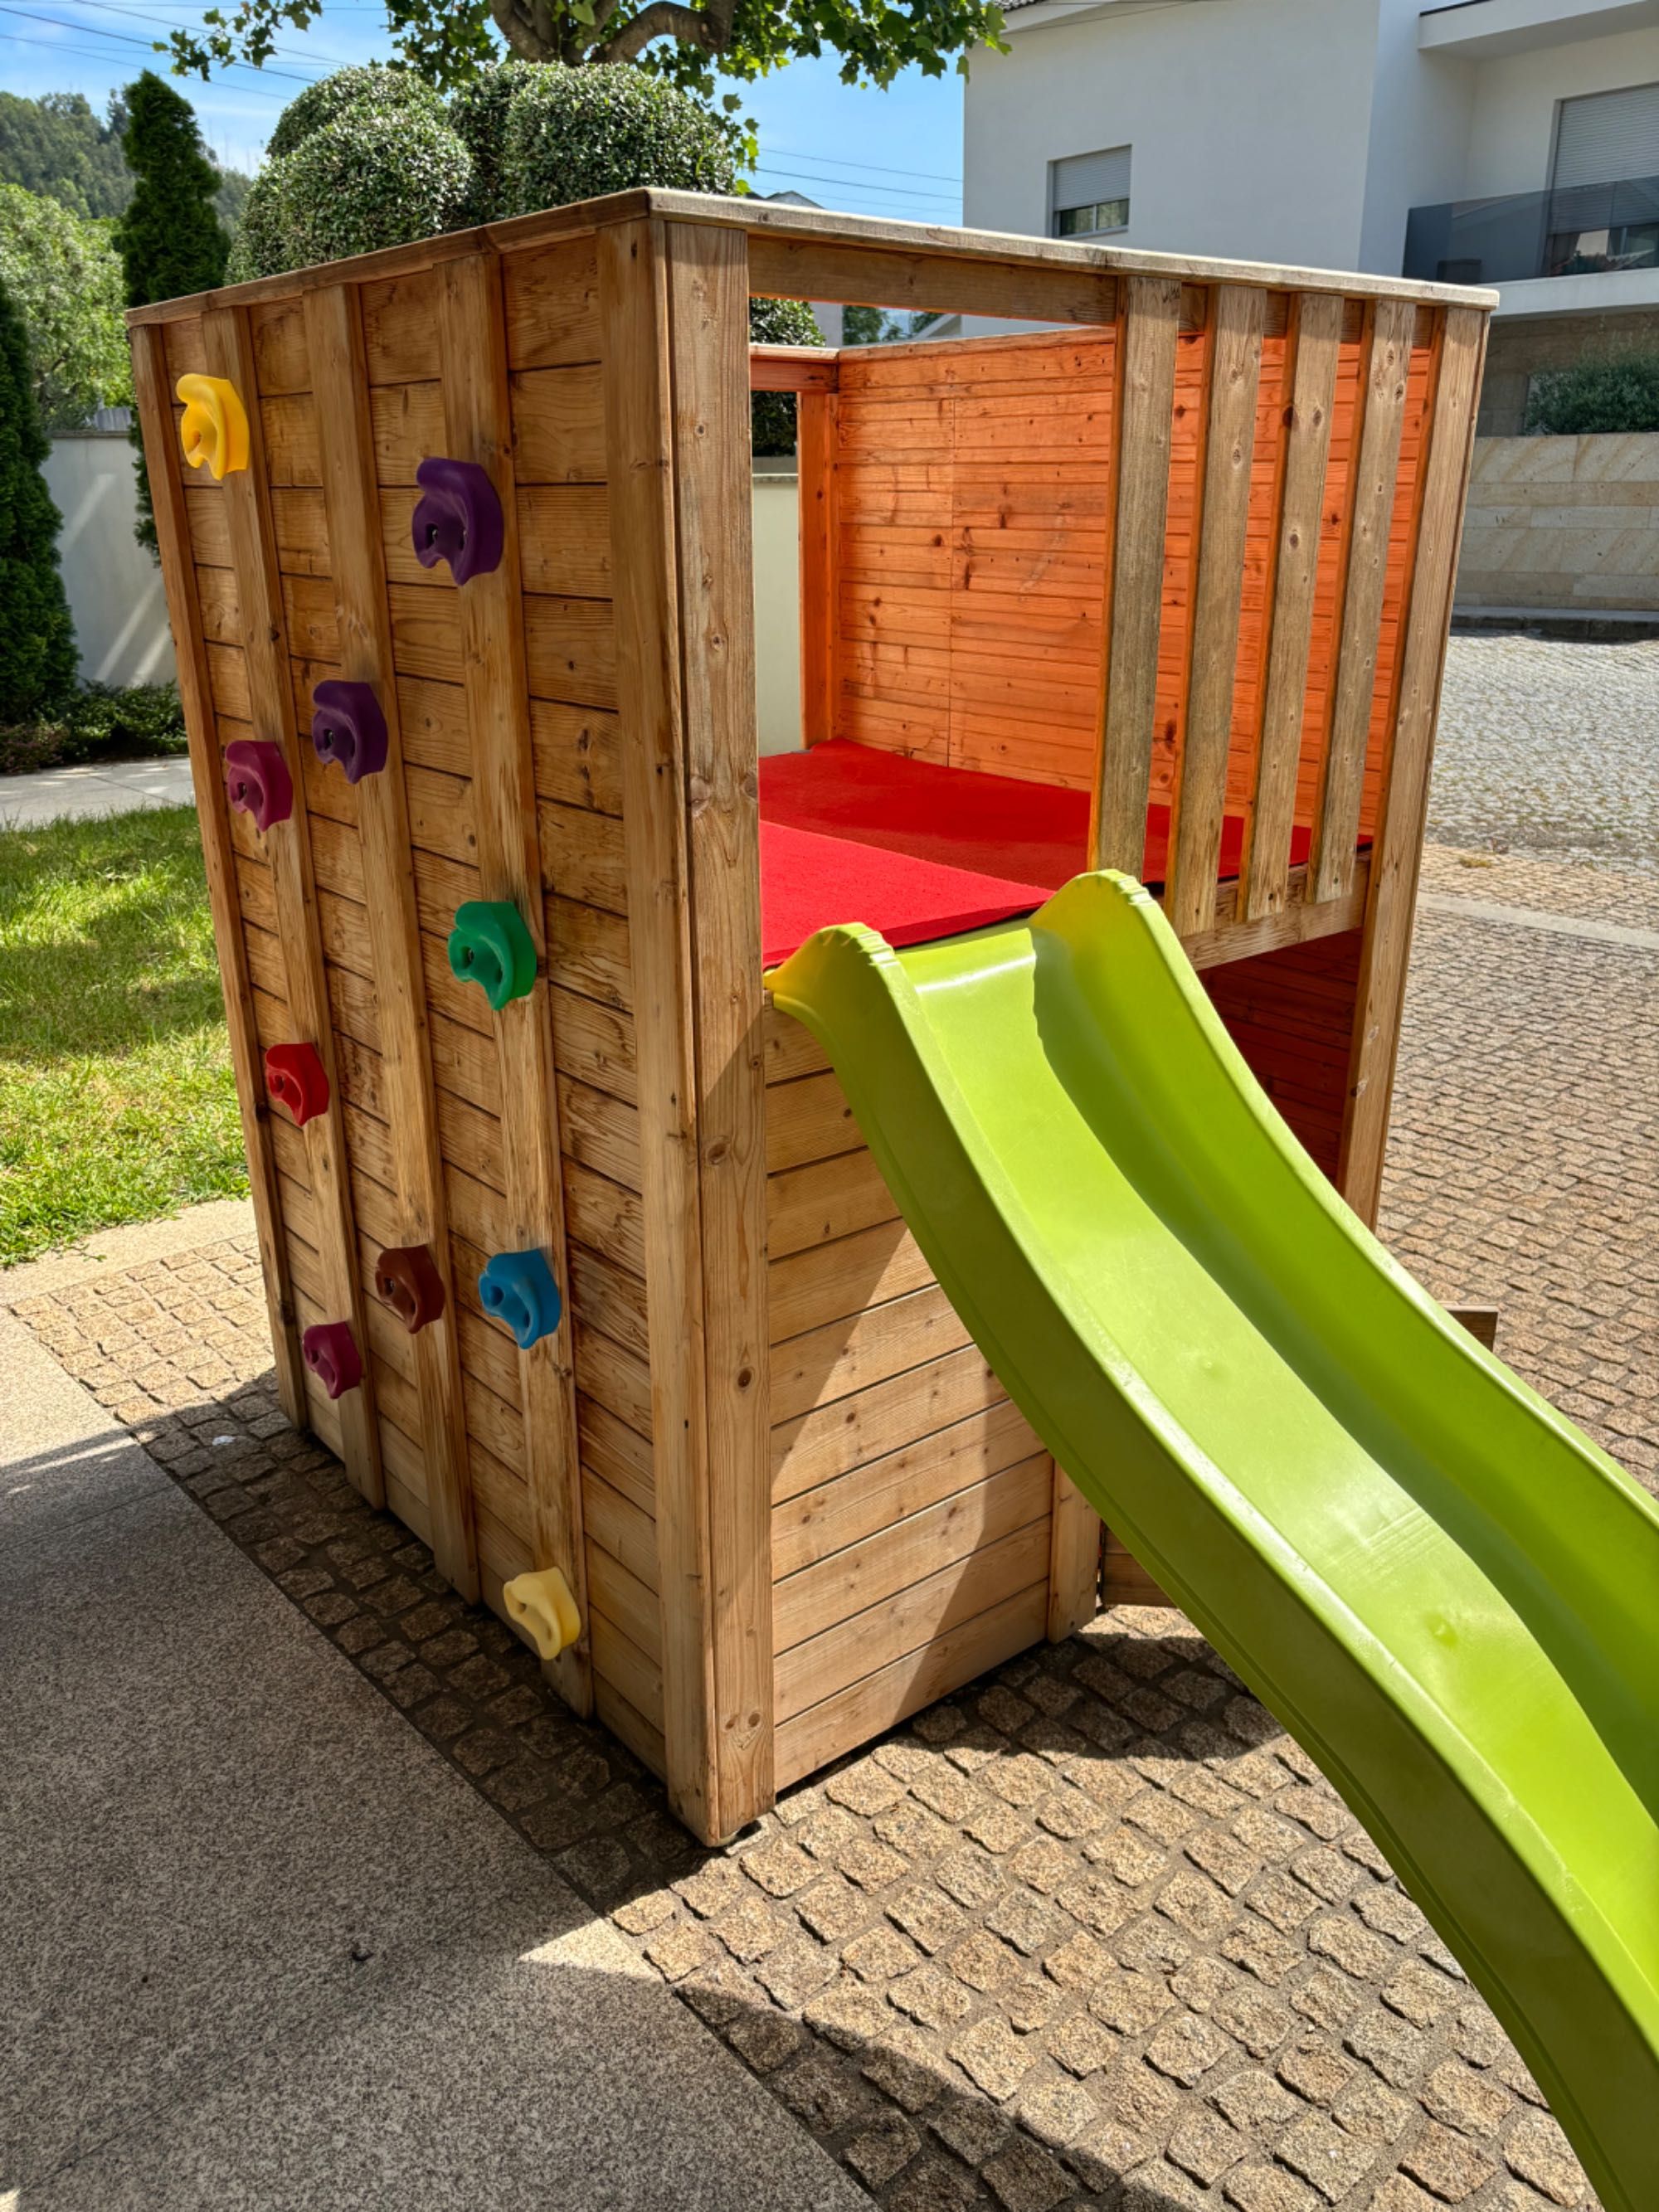 Parque infantil com casinha de brincar, escalada e escorrega